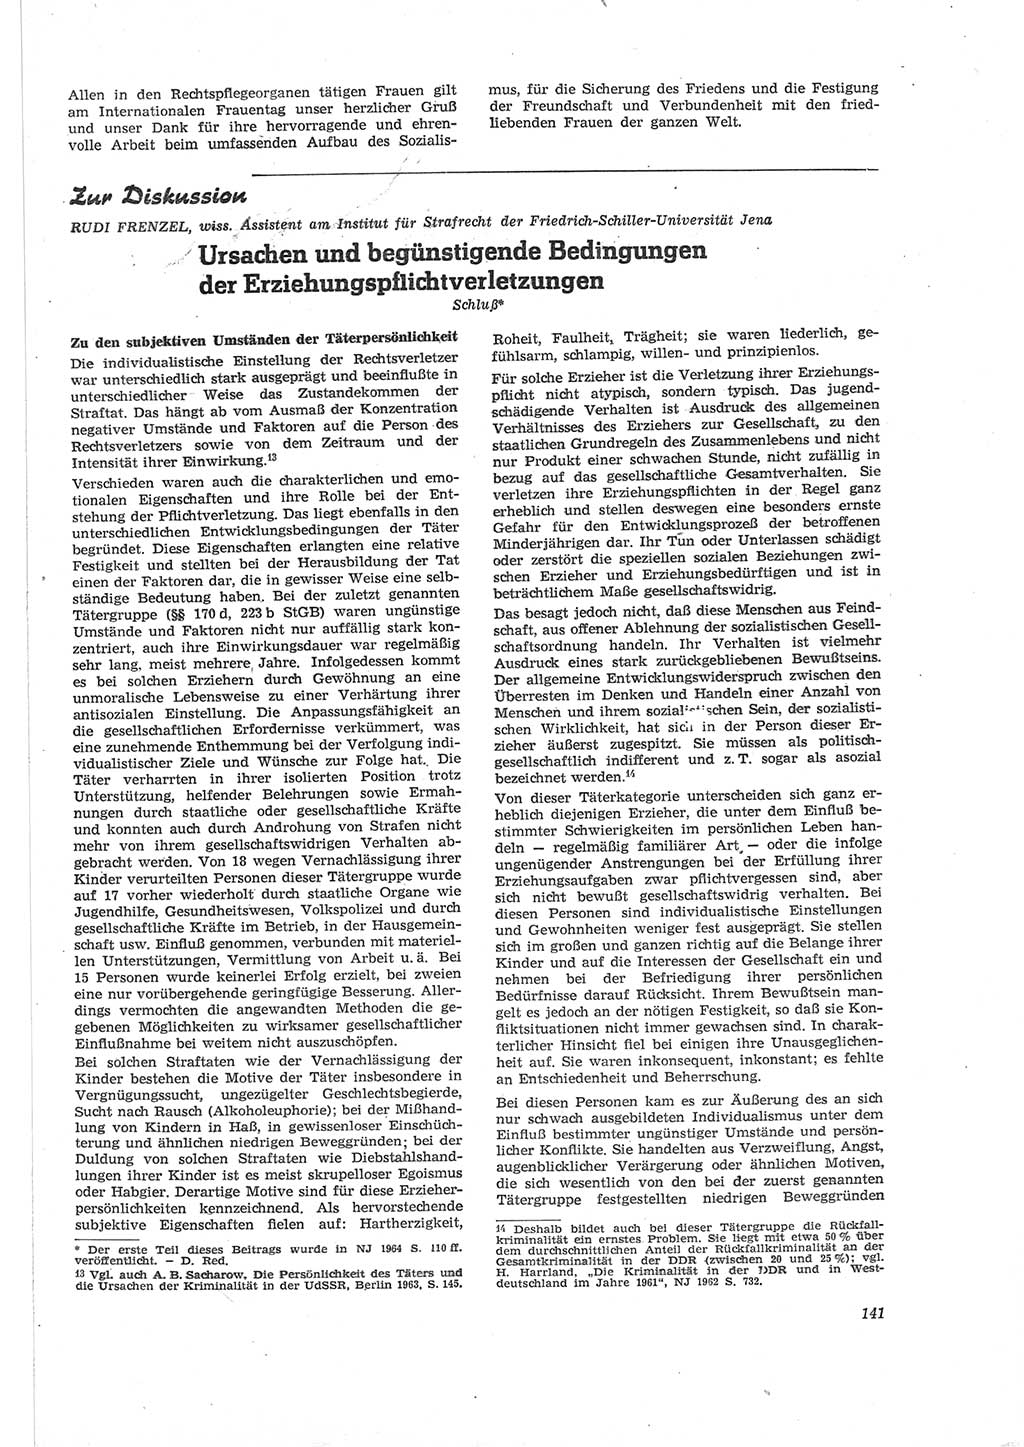 Neue Justiz (NJ), Zeitschrift für Recht und Rechtswissenschaft [Deutsche Demokratische Republik (DDR)], 18. Jahrgang 1964, Seite 141 (NJ DDR 1964, S. 141)